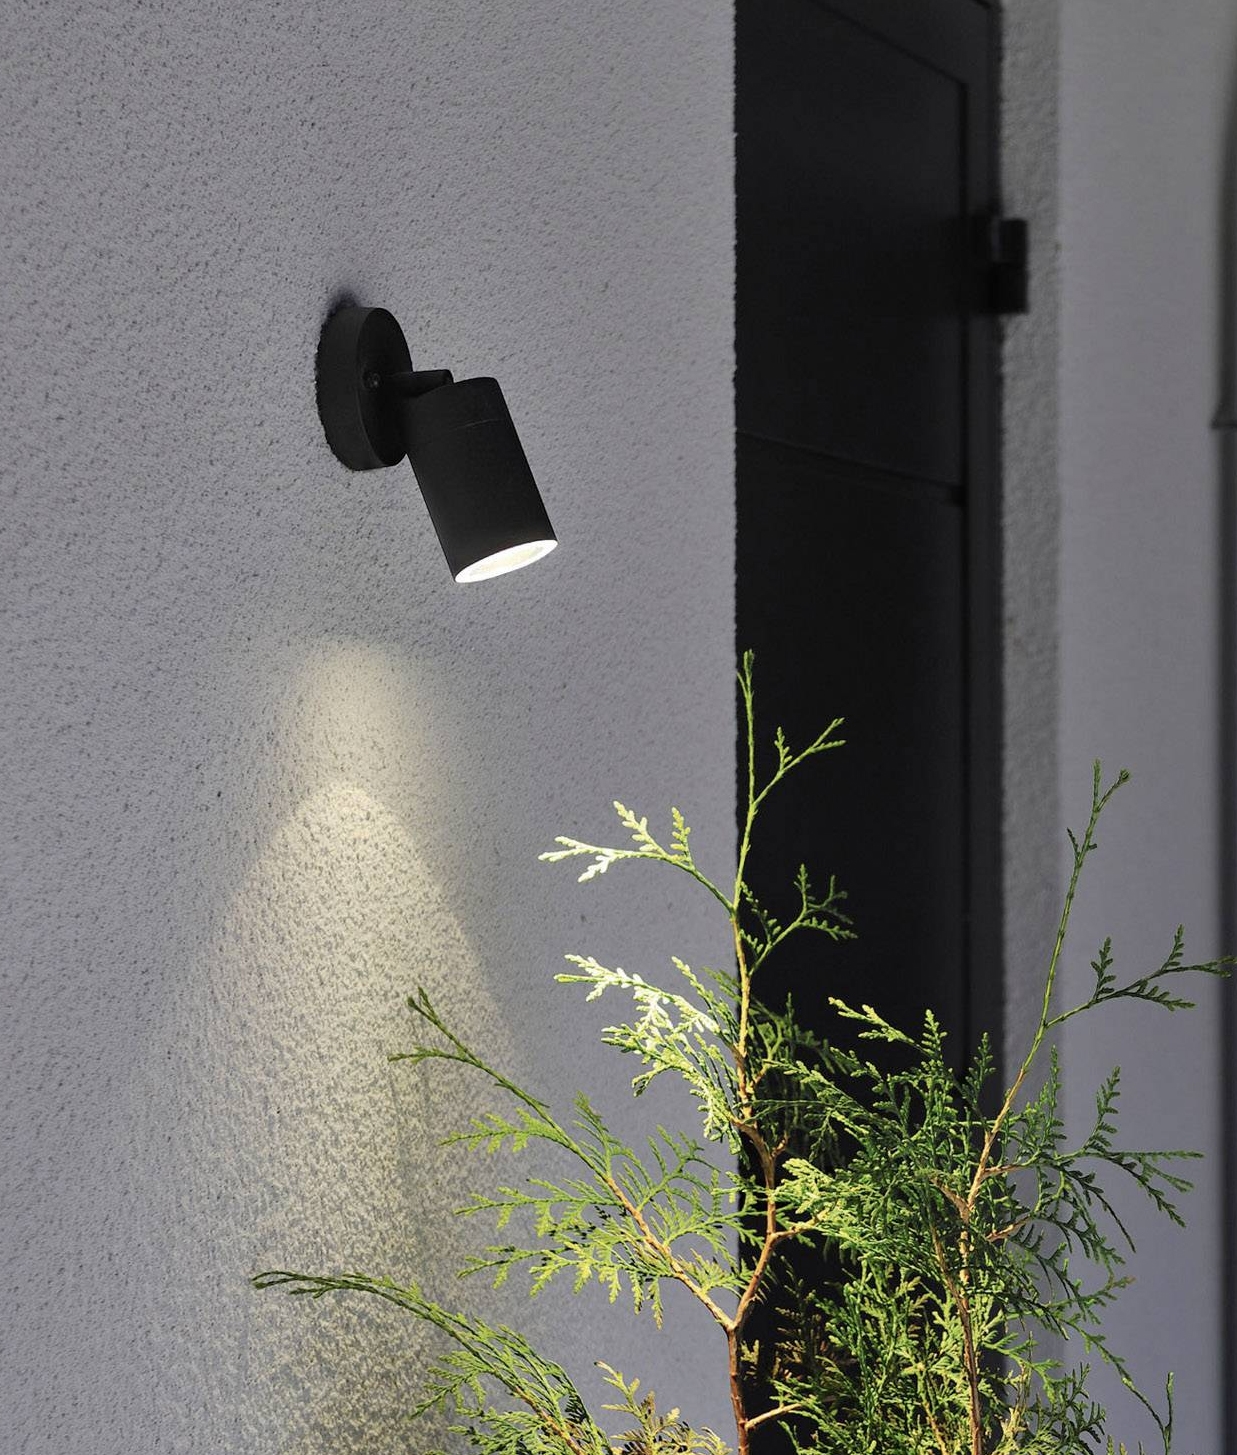 Adjustable Spotlight For Gu10 Mains, Exterior Wall Mounted Spotlights